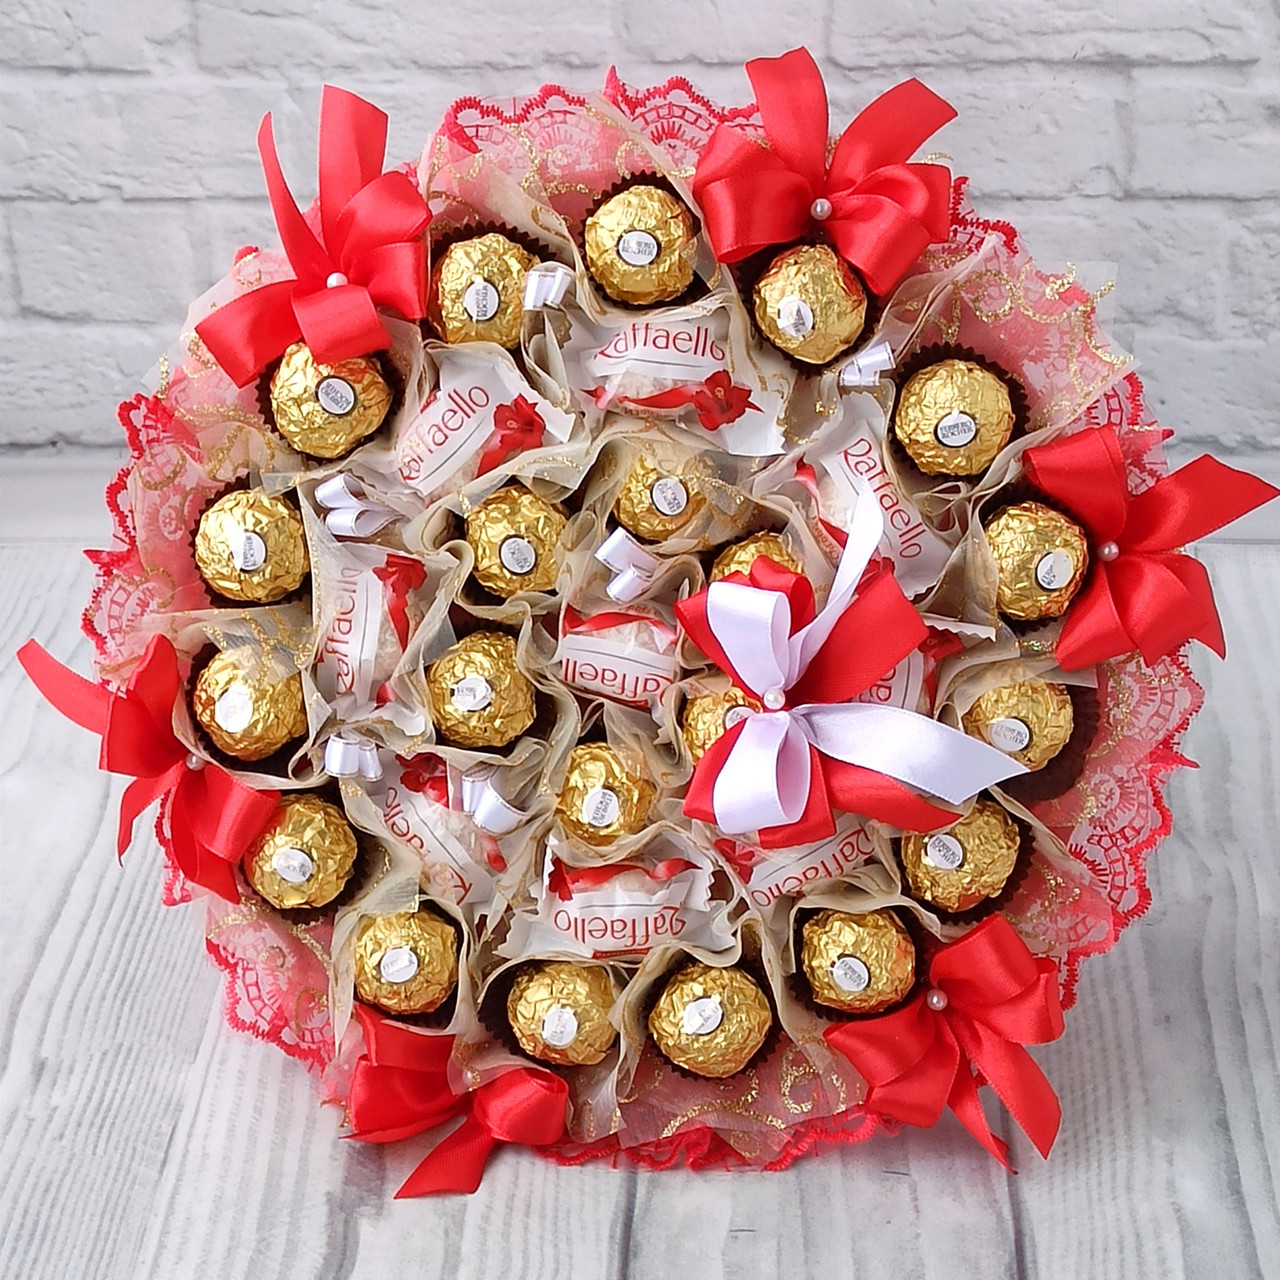 Красивий букет із цукерками Ferrero Rocher Rafaello, подарунок для жінки, мами, колеги чи начальниці